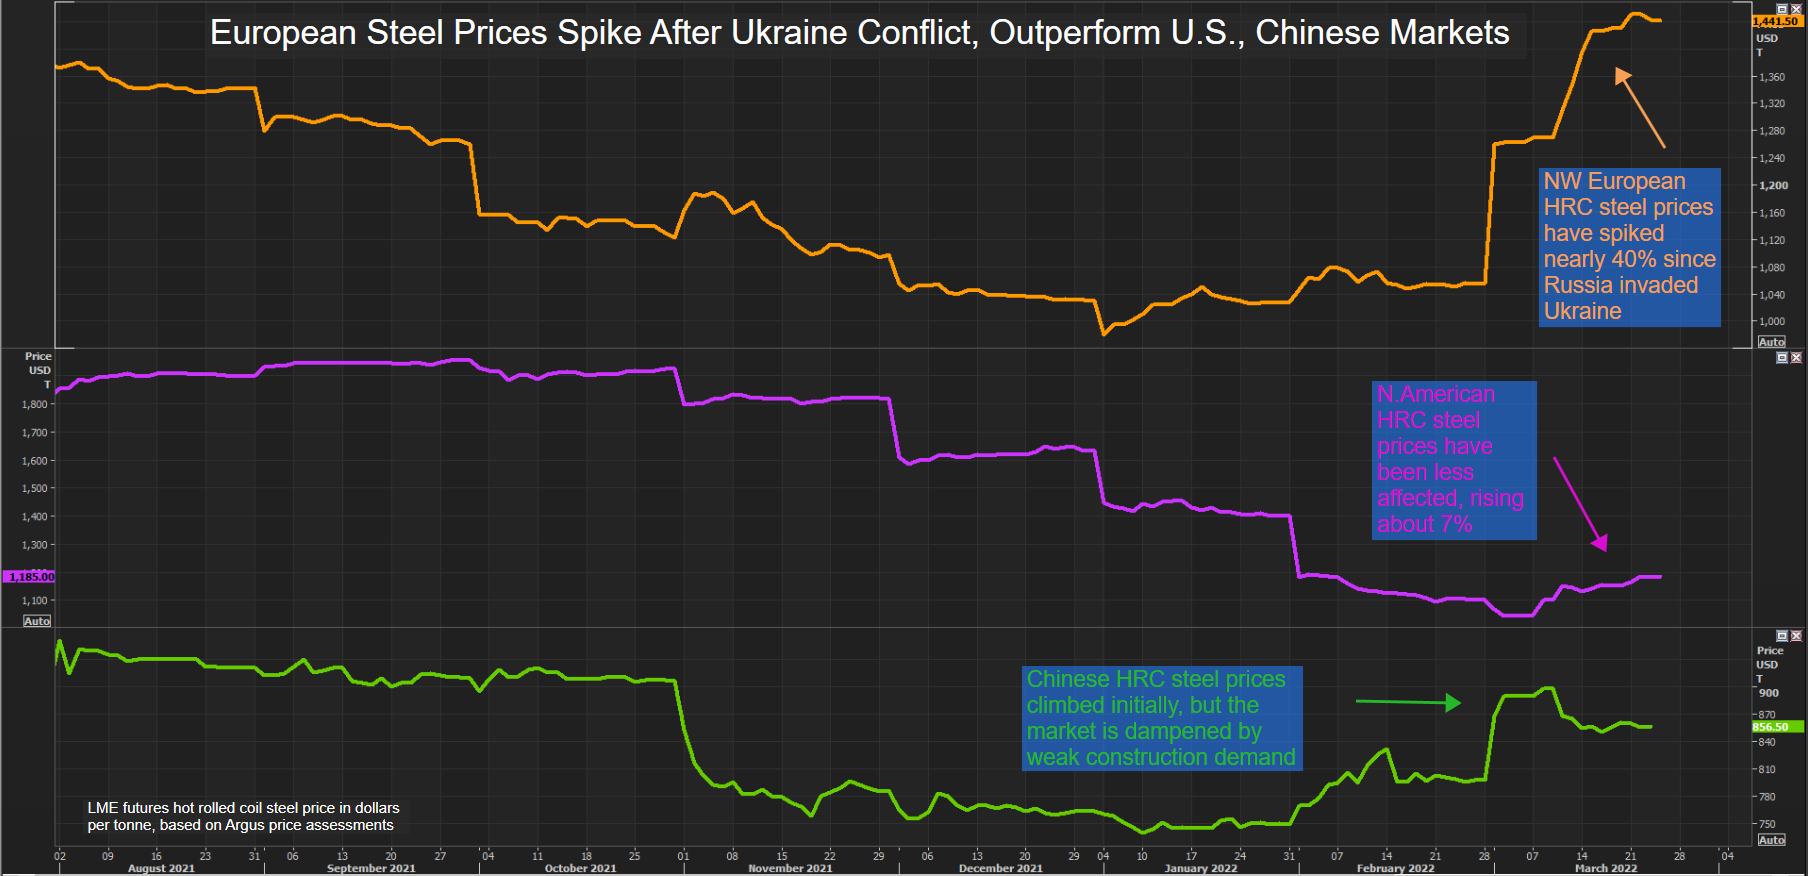 Los precios del acero europeo se disparan después del conflicto de Ucrania